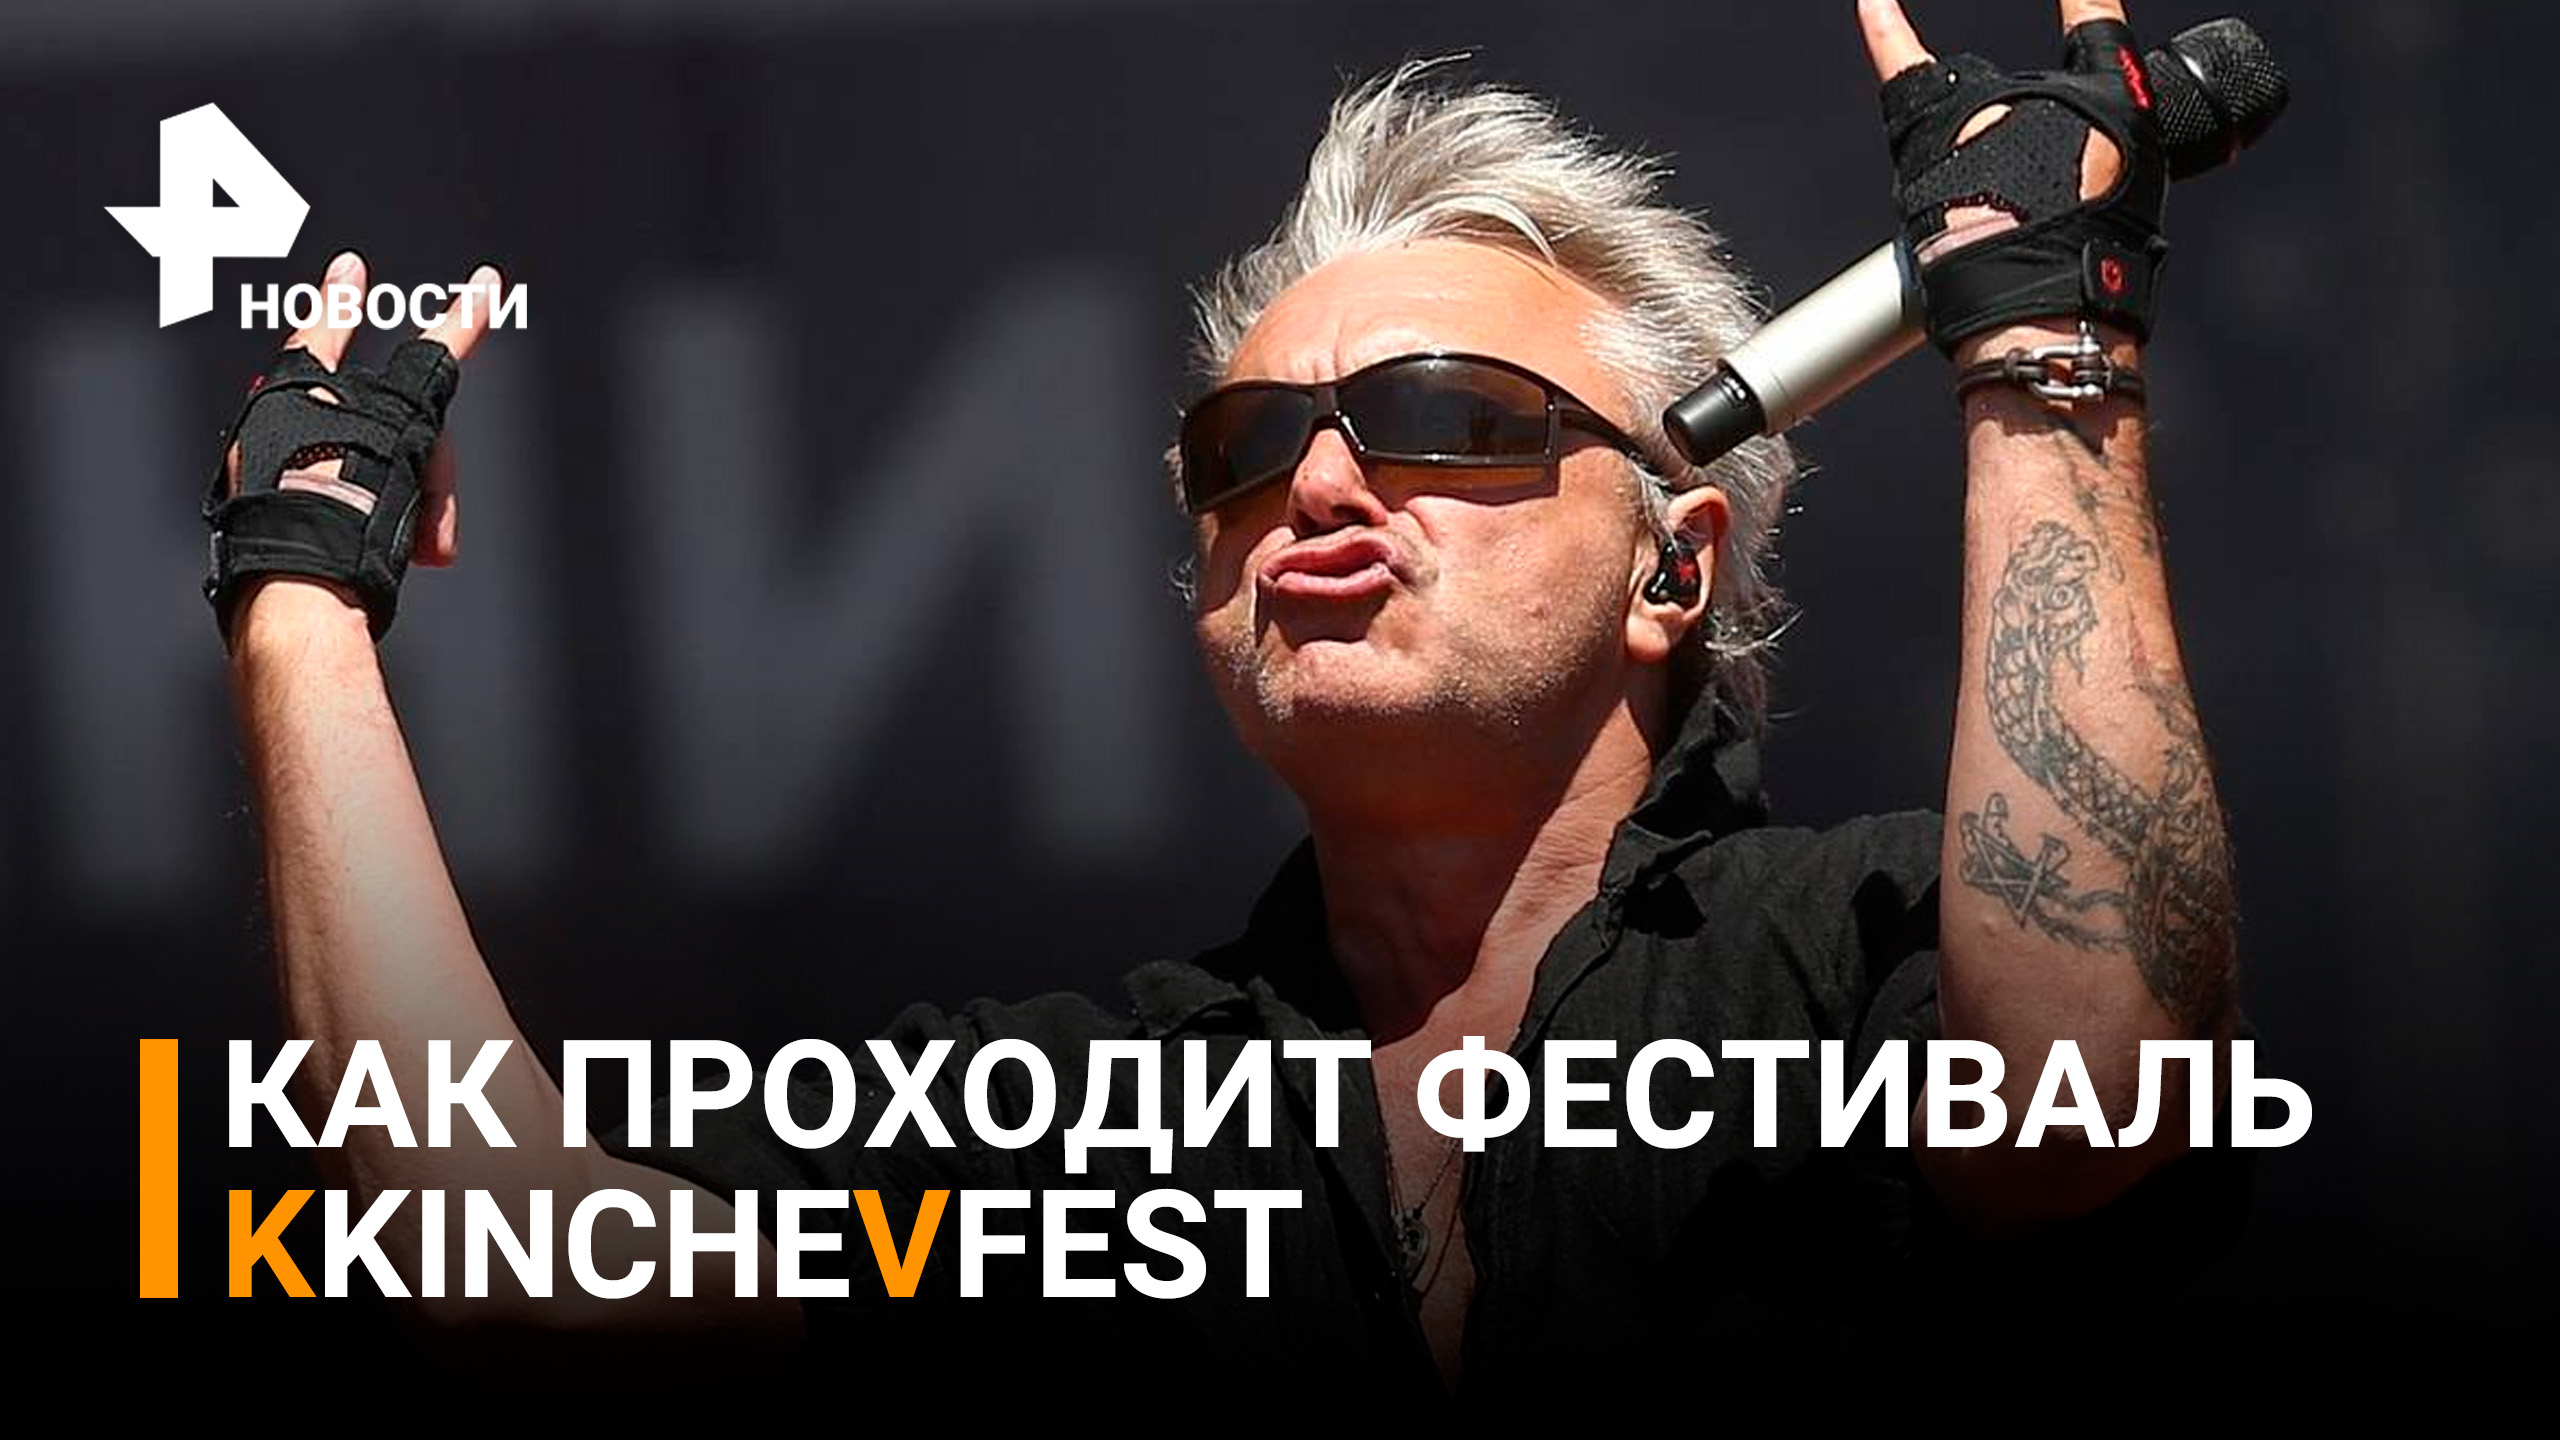 Как прошел первый день фестиваля музыки KKINCHEVFEST / РЕН Новости